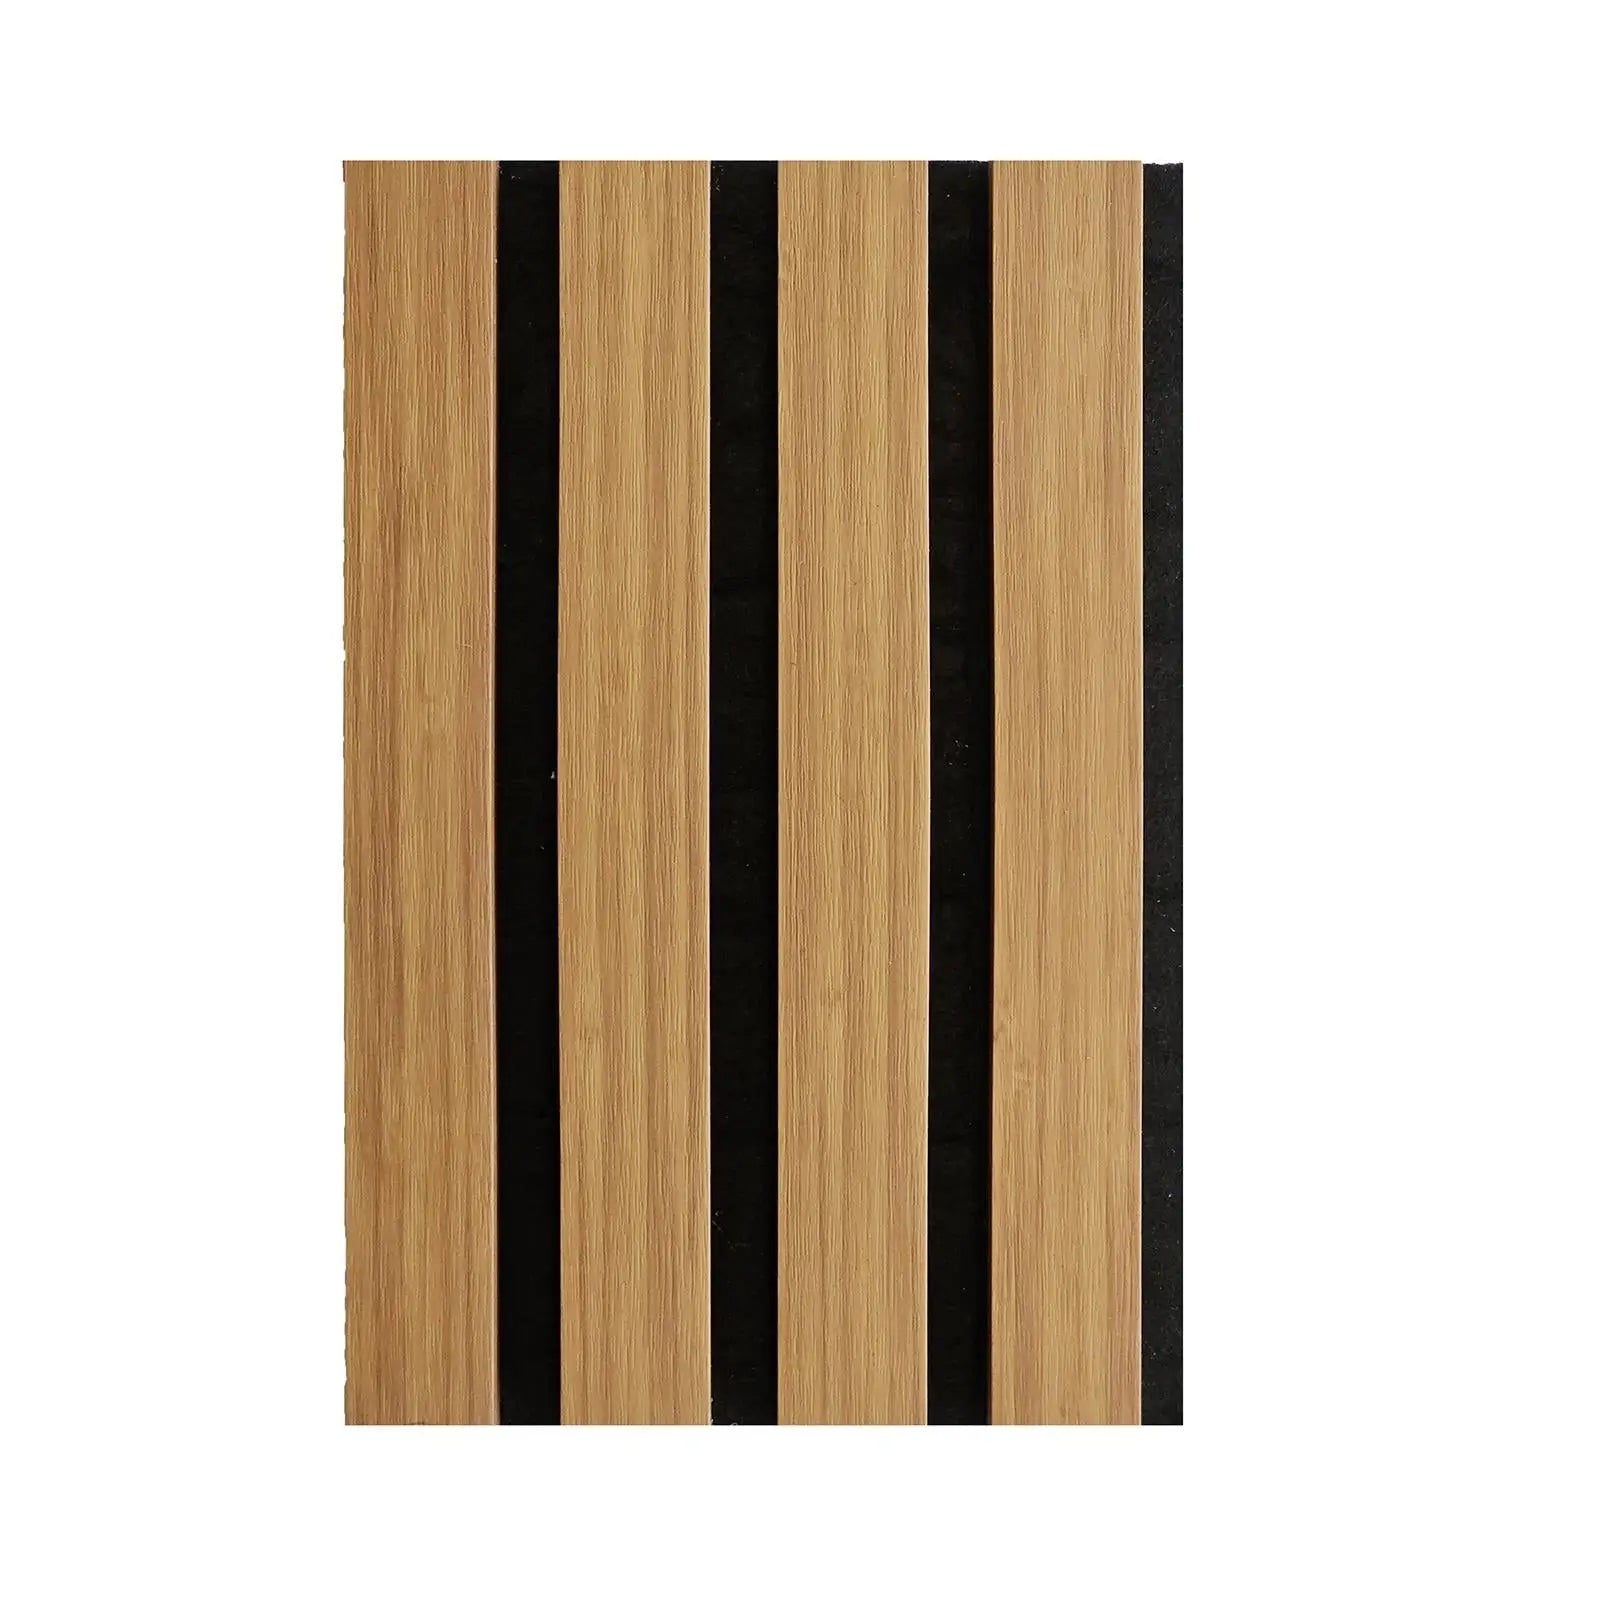 Acoustic Slat Wood Wall Panel - Oak - SAMPLE